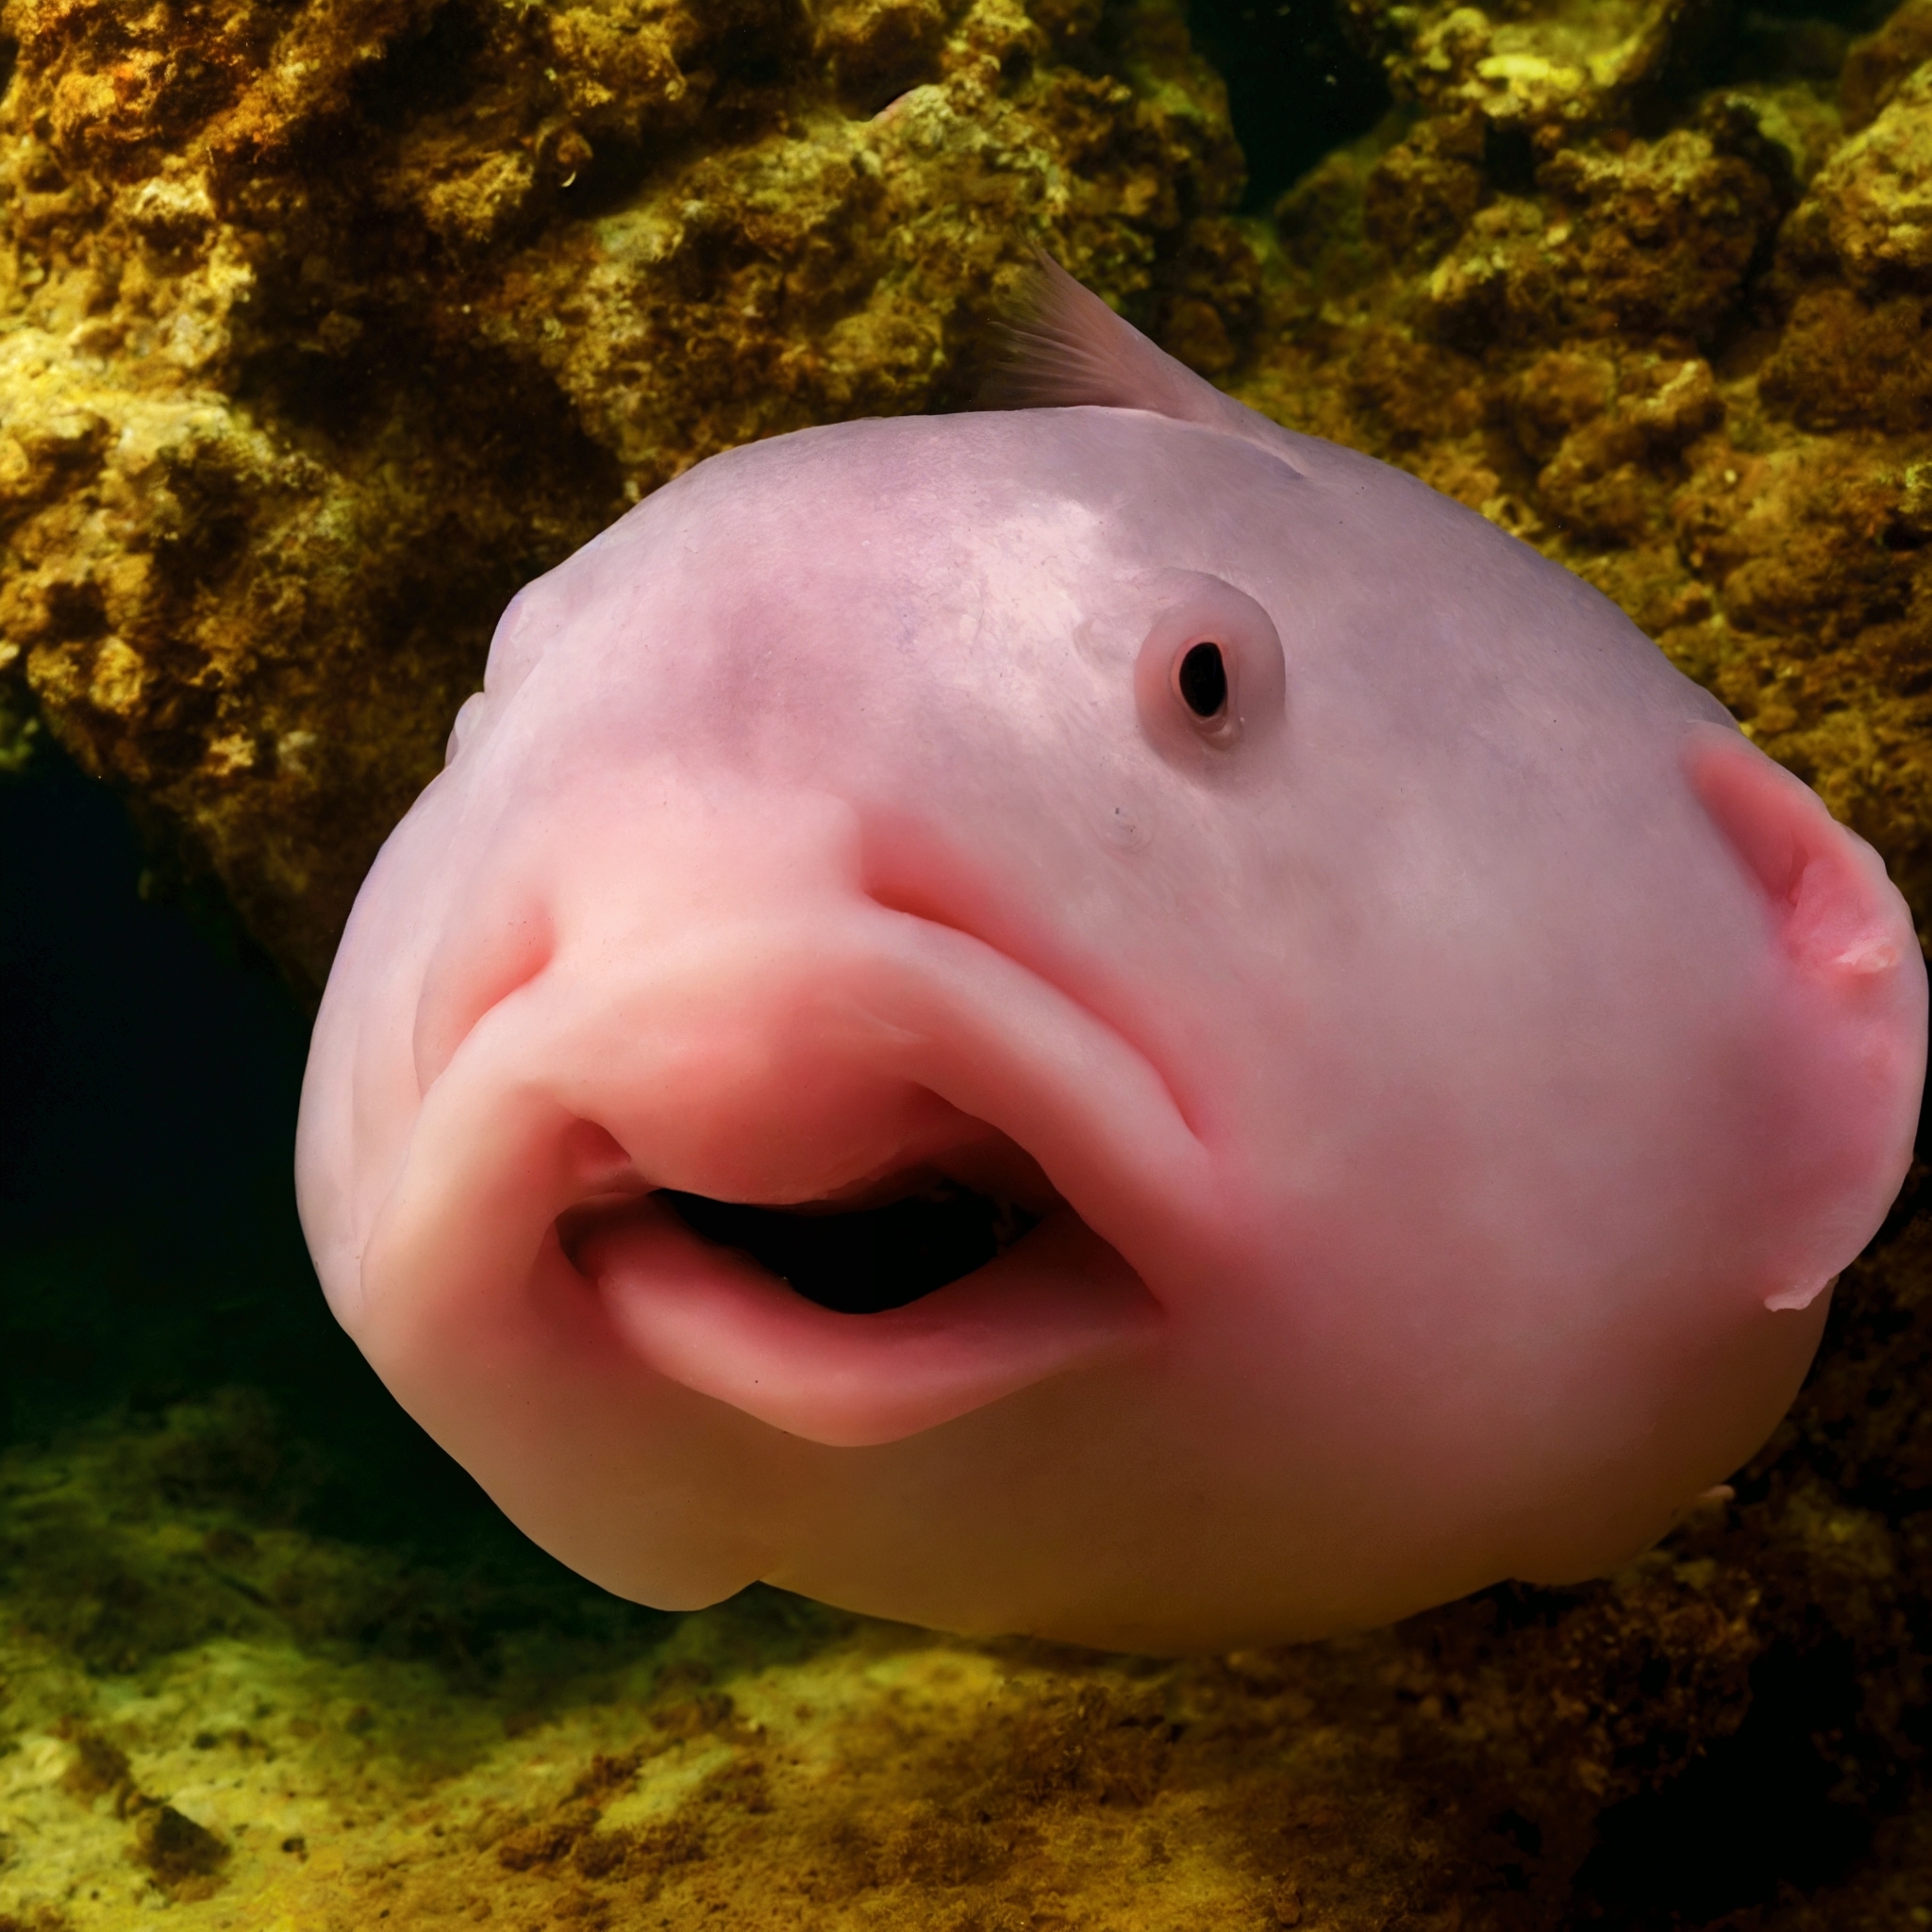 Photo of Blobfish. | Source: Shutterstock